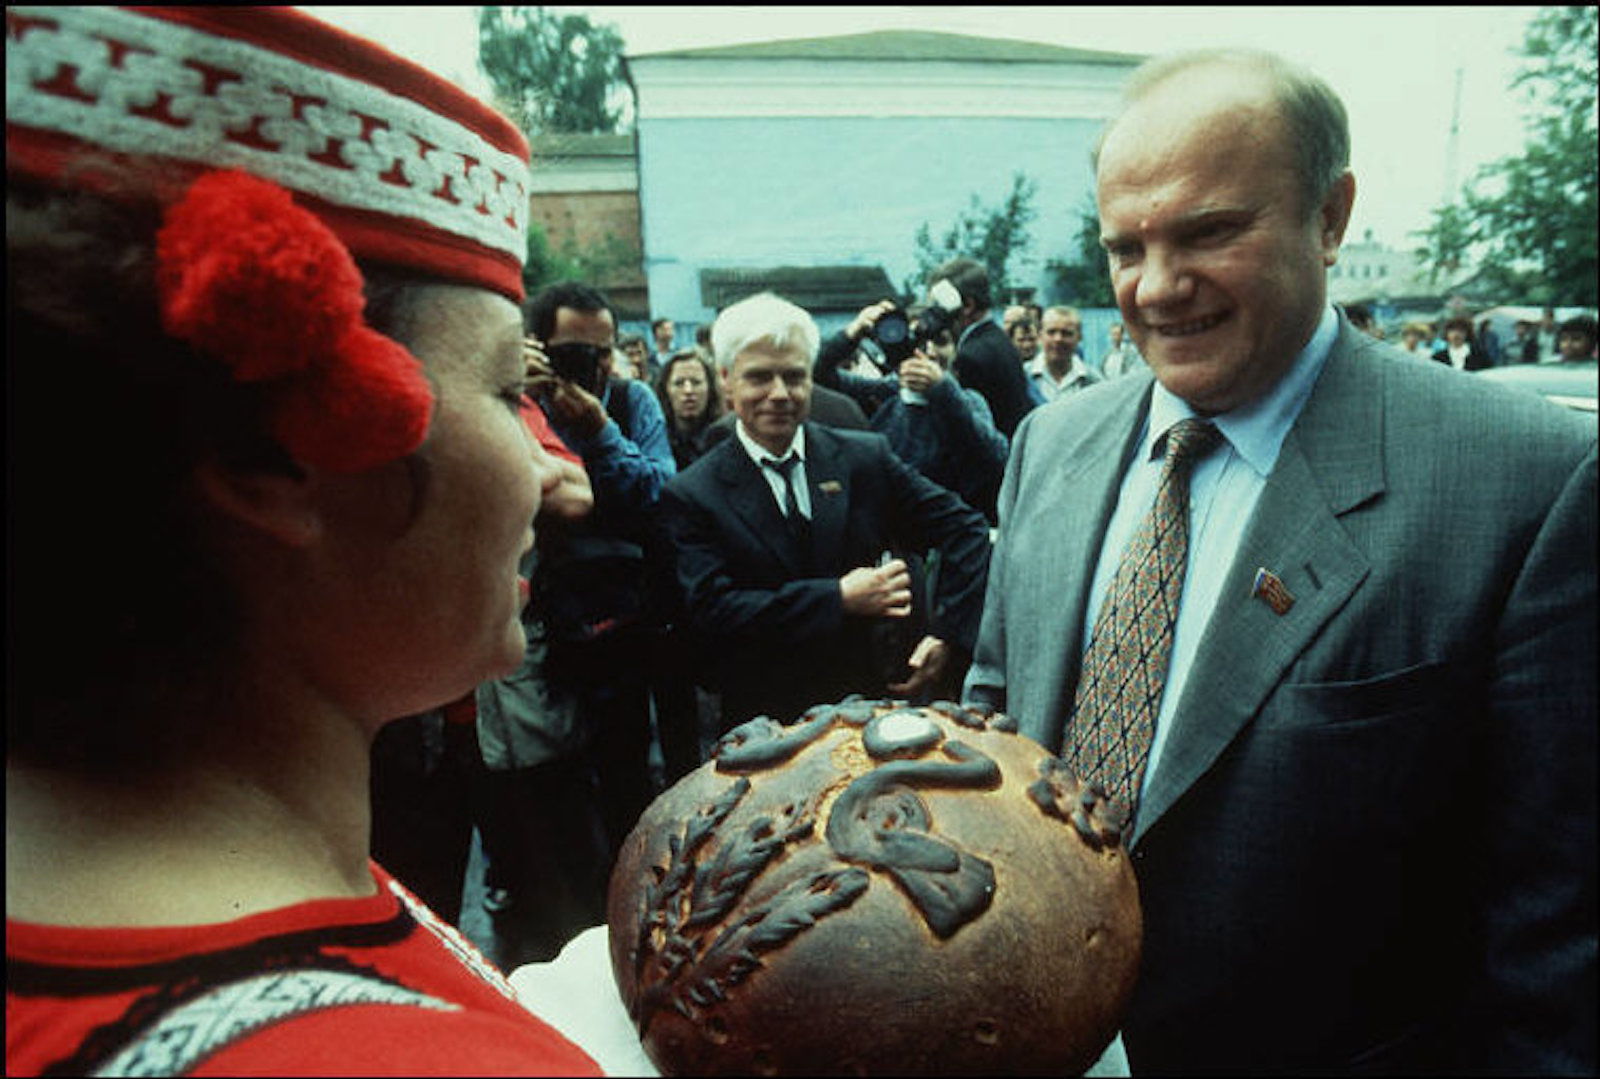 Президентские выборы ельцина. Ельцин 1996. Ельцин и Зюганов 1996. Ельцин выборы 1996. Президентская кампания Ельцина 1996.